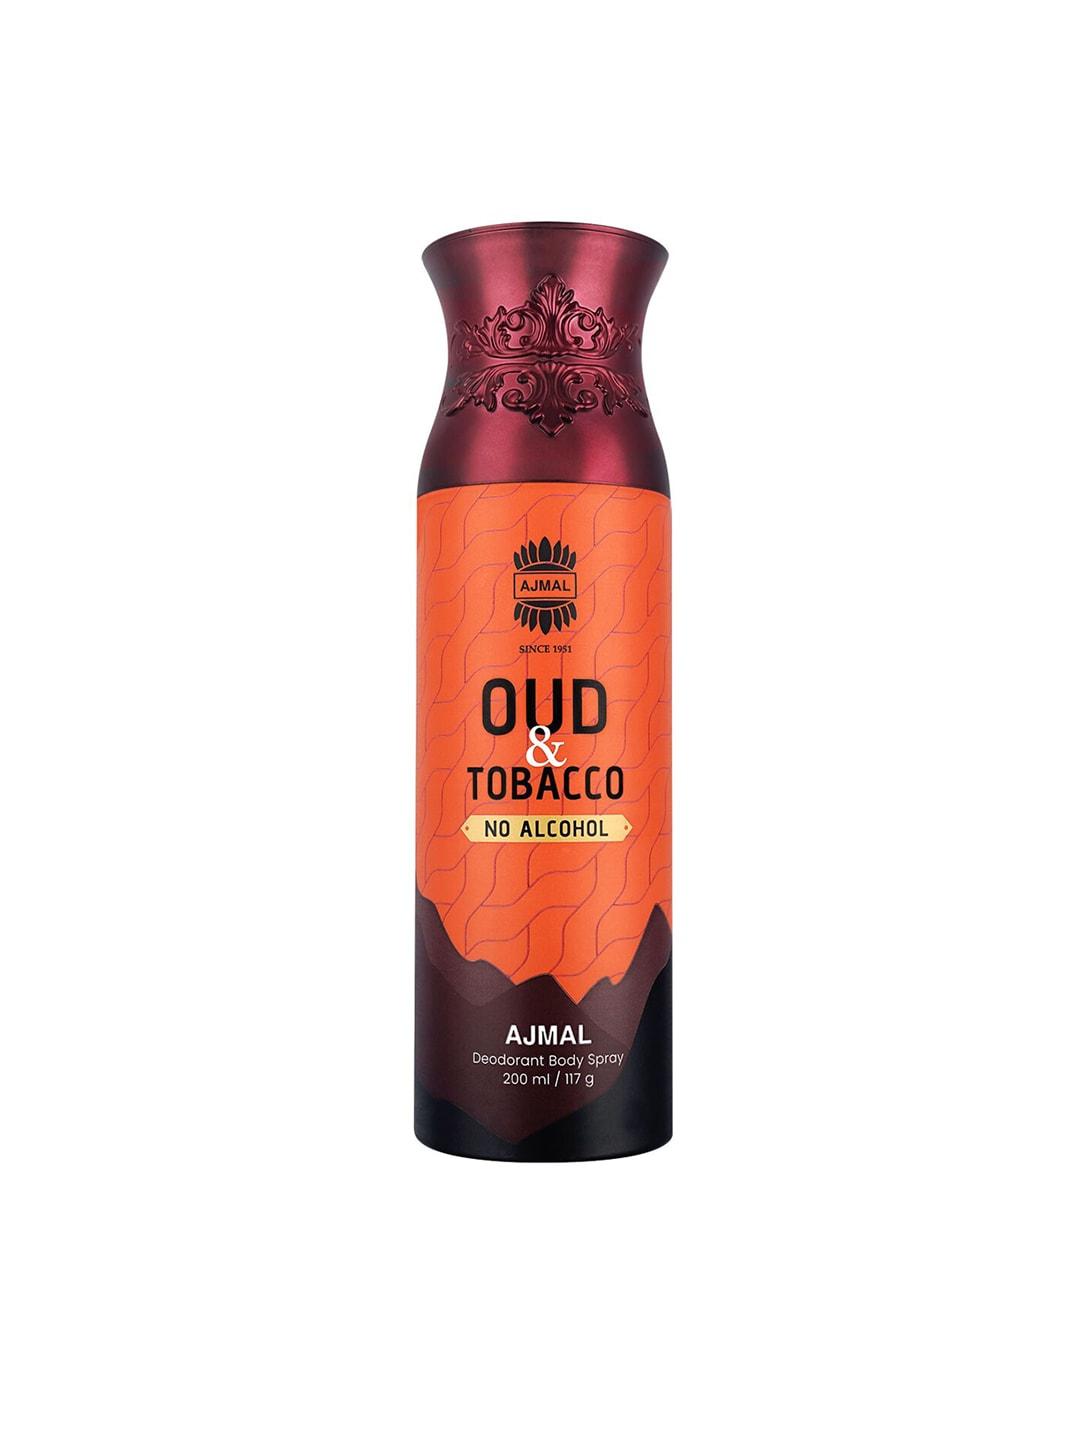 Ajmal Oud Tobacco Deodorant Body Spray - 200ml/117g